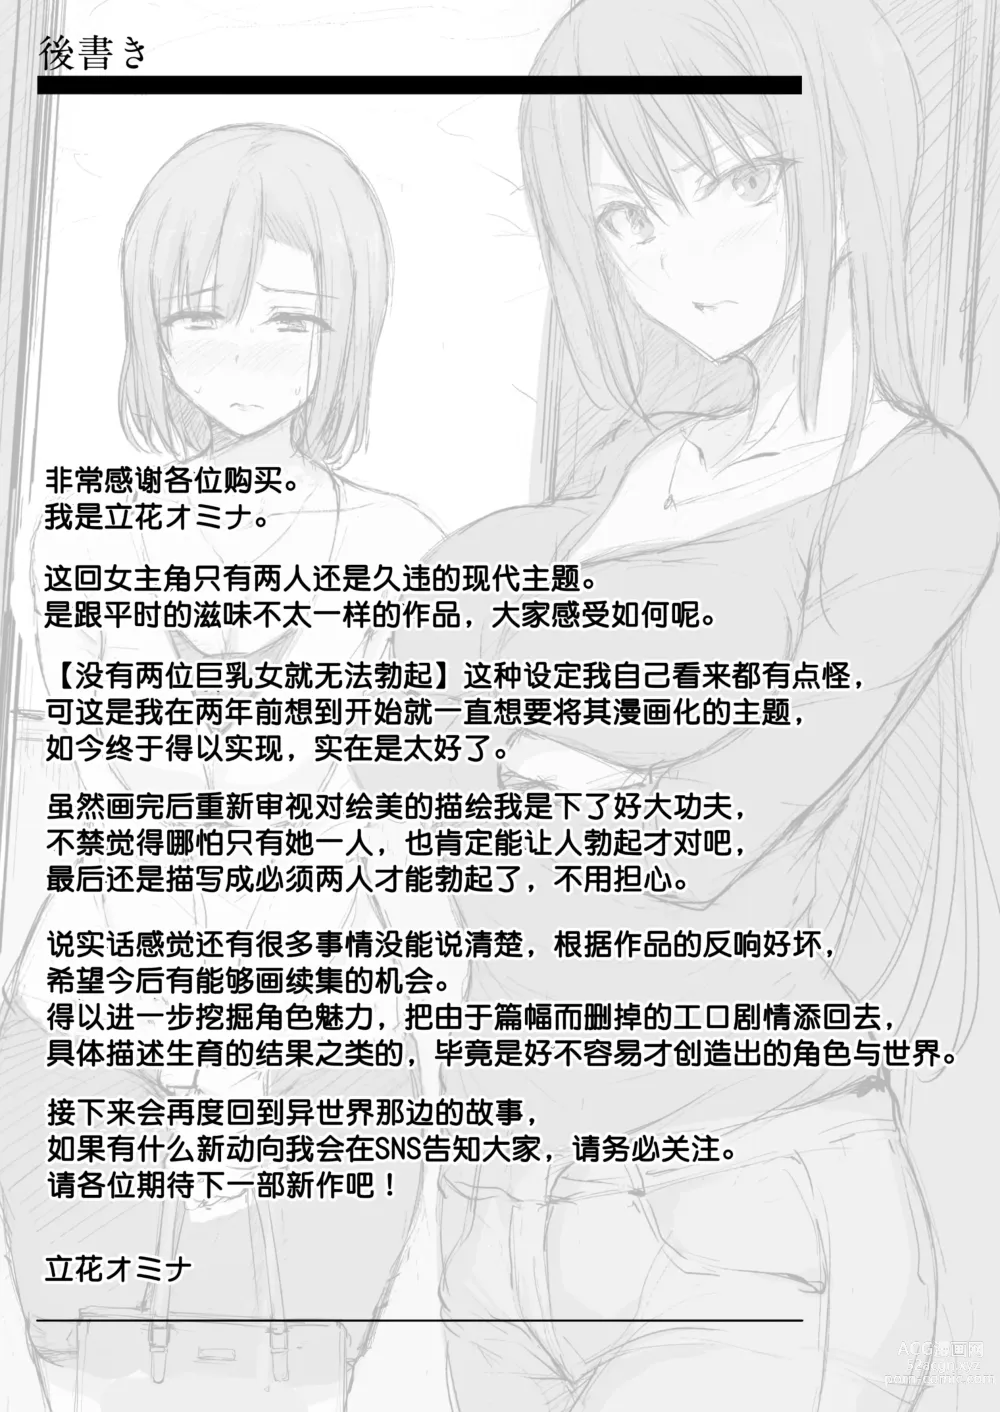 Page 67 of doujinshi 巨乳が2人いないと勃起しない夫のために友達を連れてきた妻+巨乳が二人いないと オマケ本